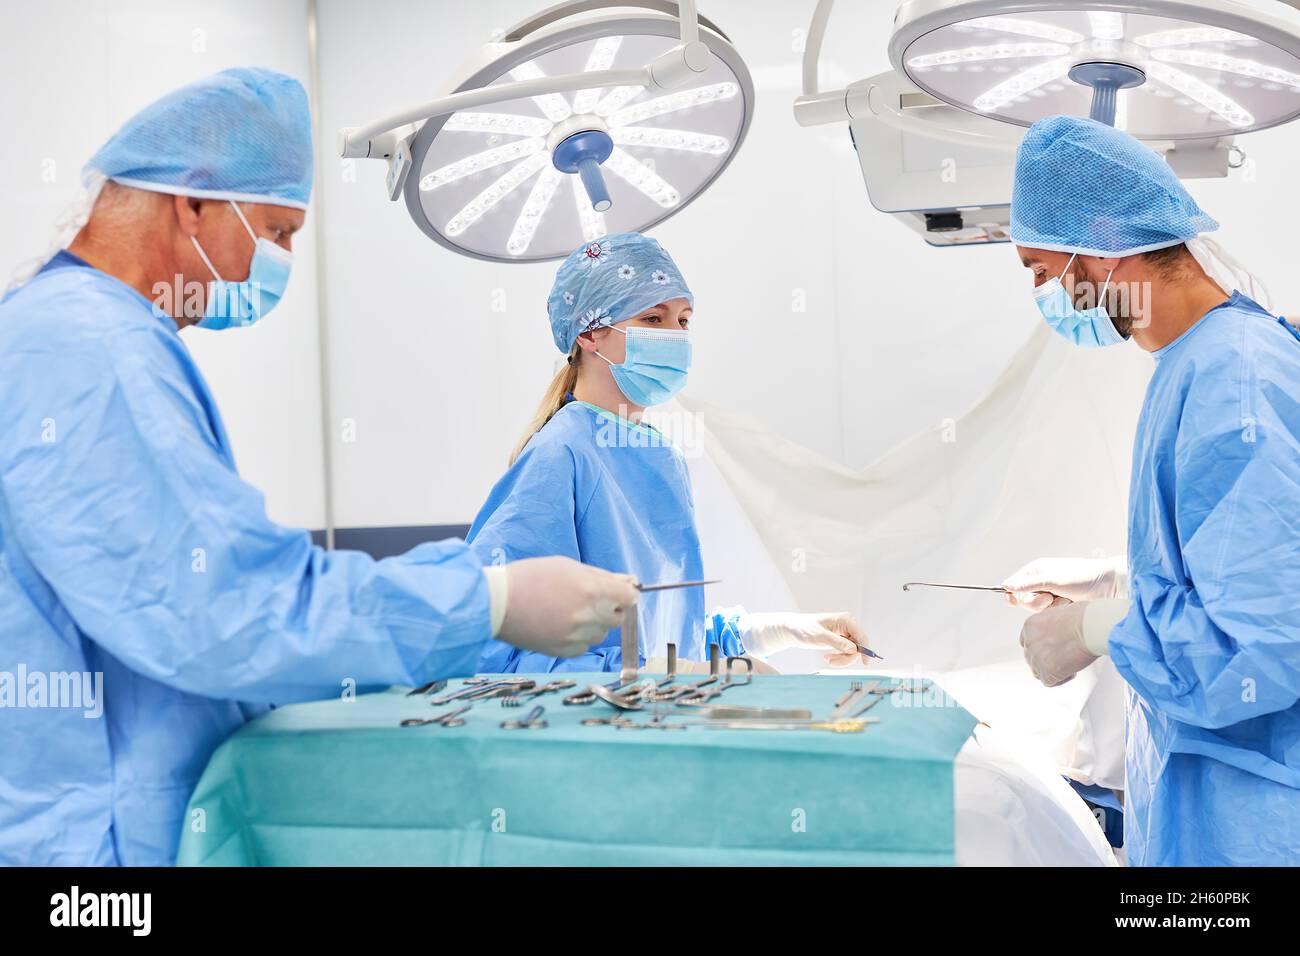 Medizinisches Team in der Chirurgie bereitet sich auf eine Operation mit sterilen chirurgischen Instrumenten vor Stockfoto